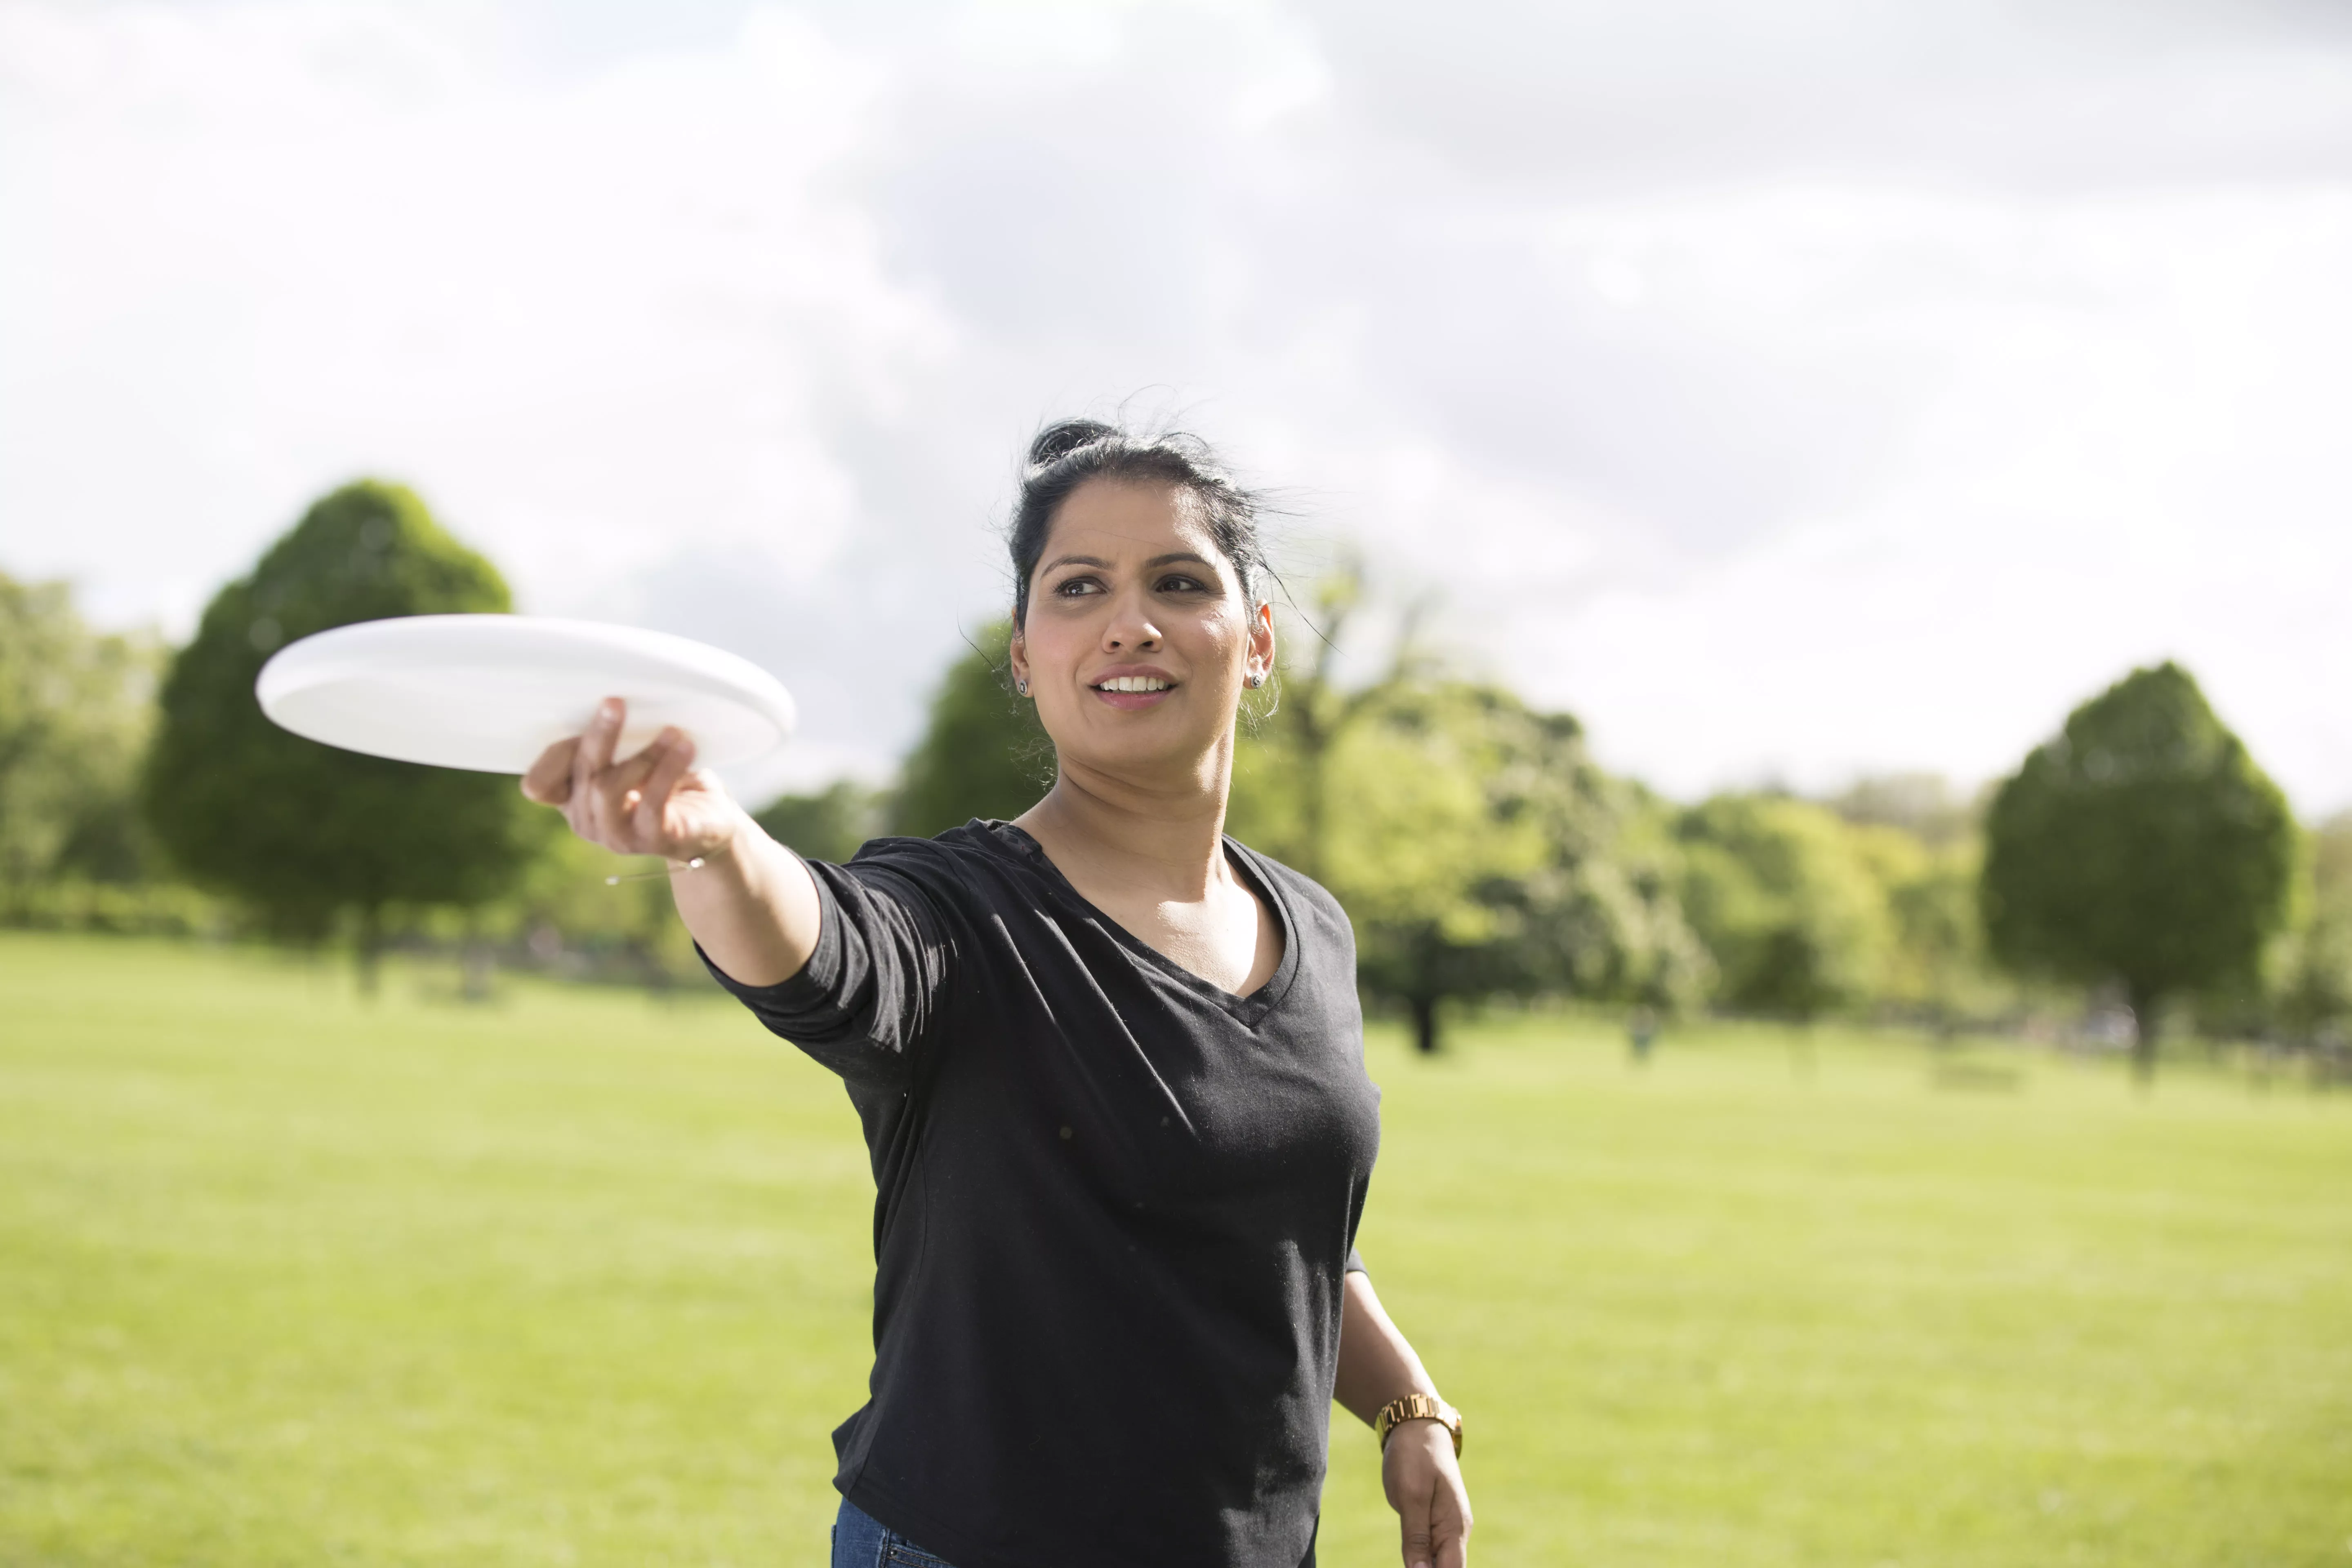 Mujer jugando con frisbee